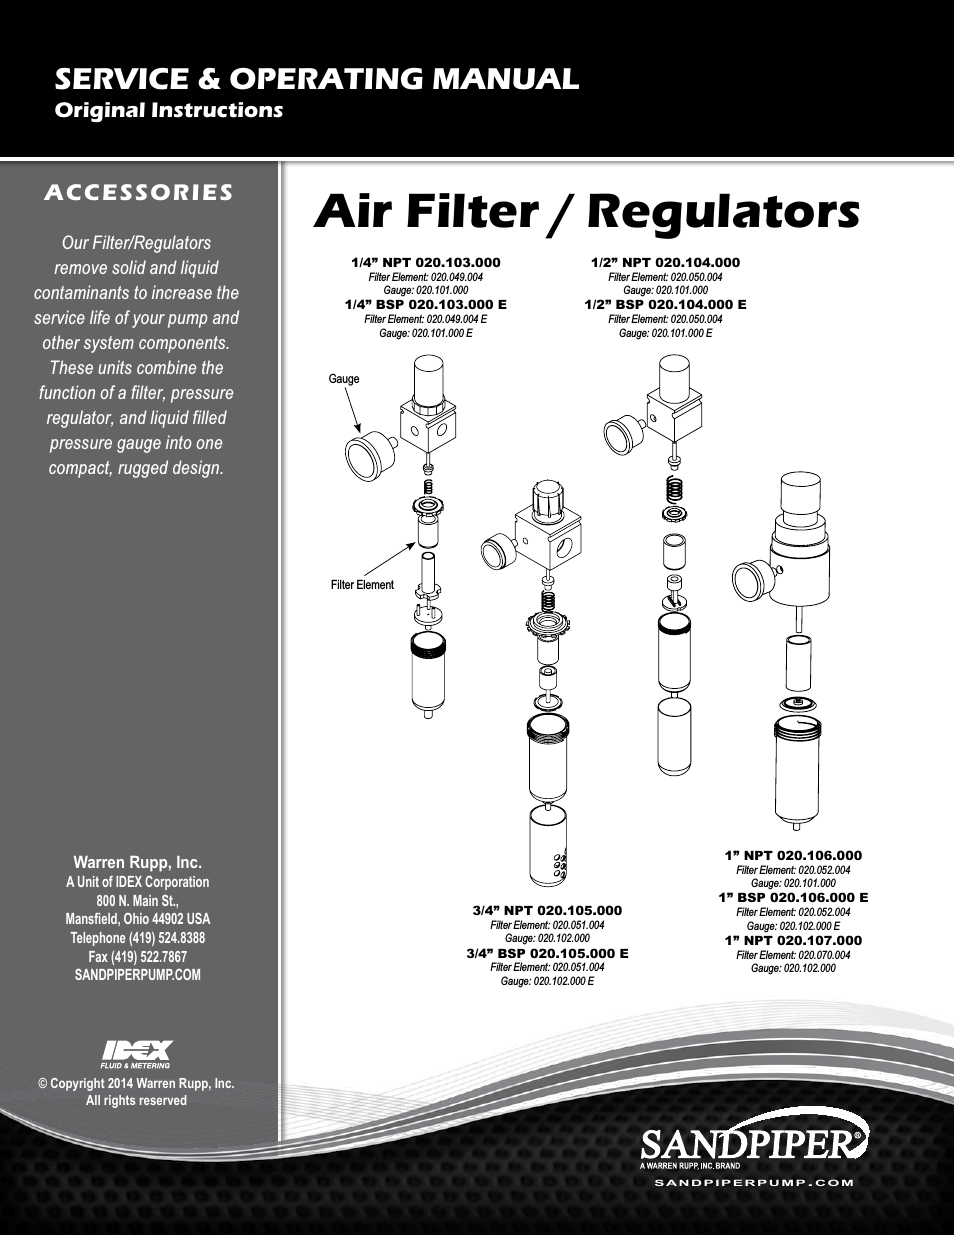 Air Filter/Regulators